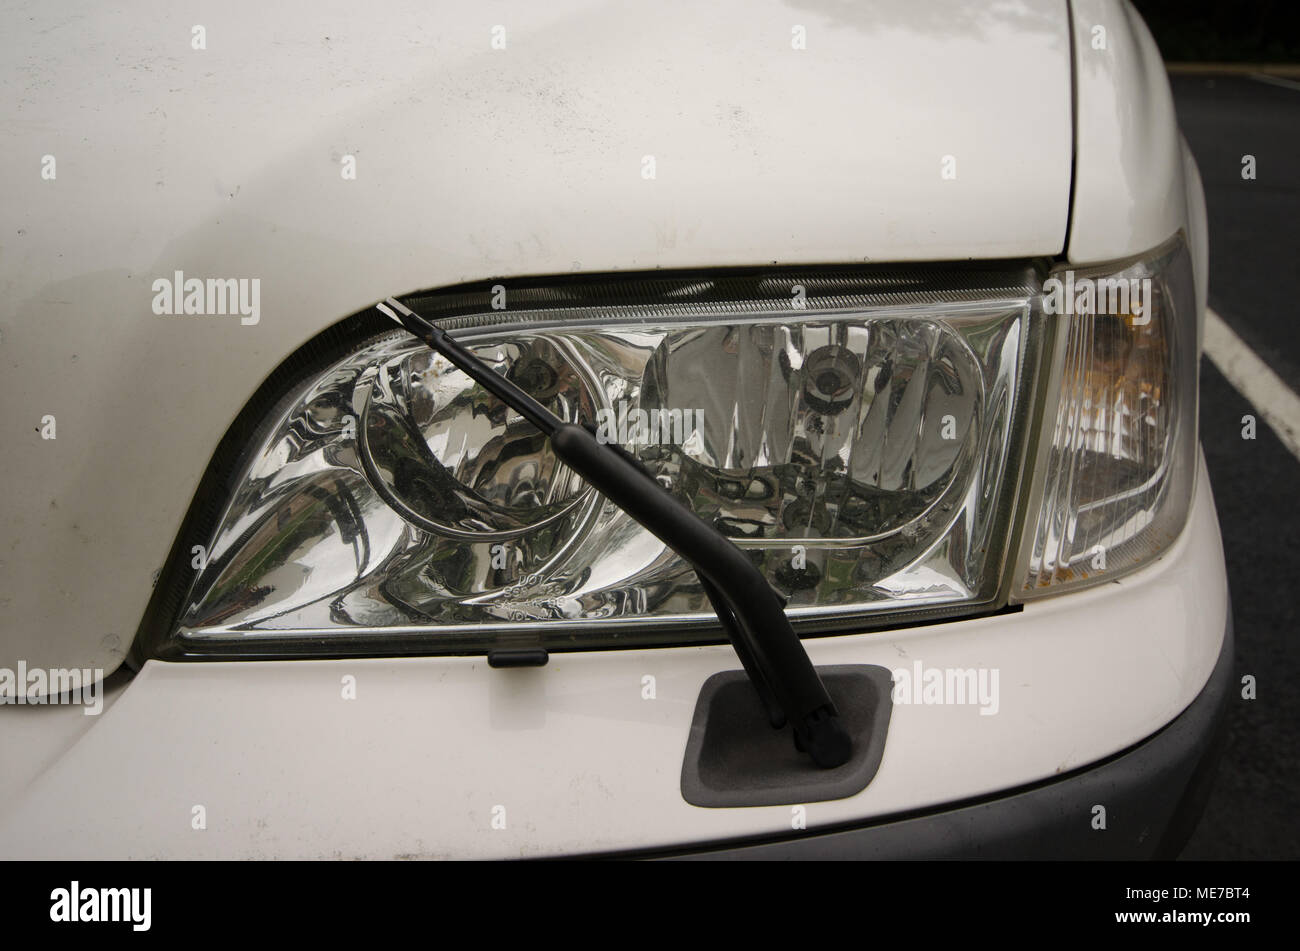 Scheibenwischer ein Auto Scheinwerfer Stockfotografie - Alamy